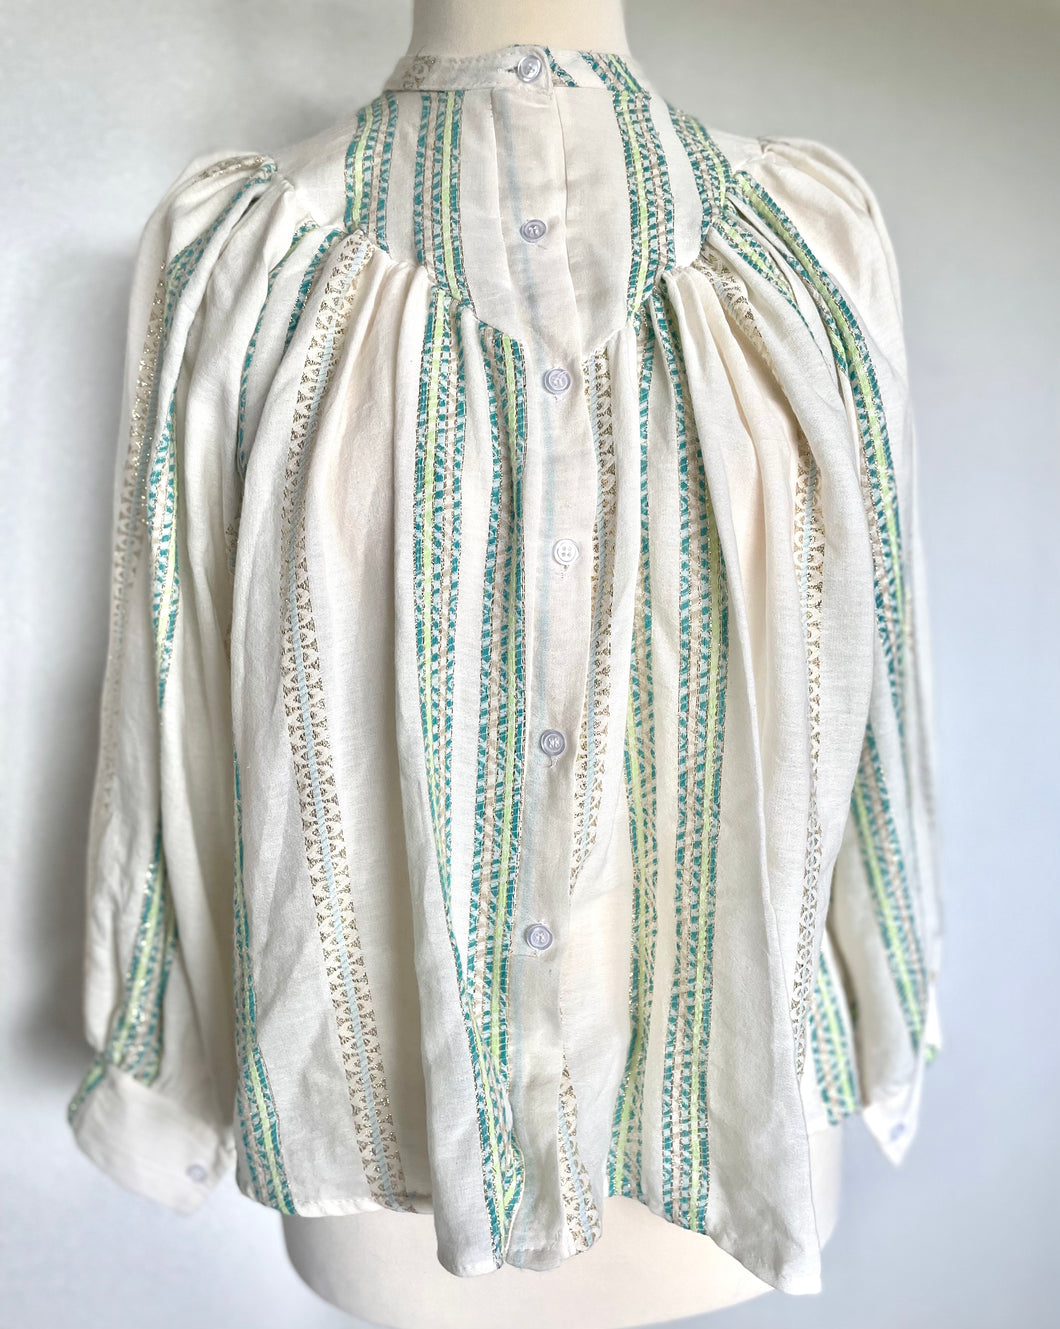 Oversized katoenen blouse, een heerlijk luchtige wijde blouse met lange mouwen, heeft op het voorpand en het achterpand een dubbel gestikt stuk in een punt, als leuk detail. Deze blouse heeft een mooi patroon in kleur met lurex draad. Deze blouse is verkrijgbaar in verschillende kleuren: Beige/Blue, Beige/Pink, Beige/Green.